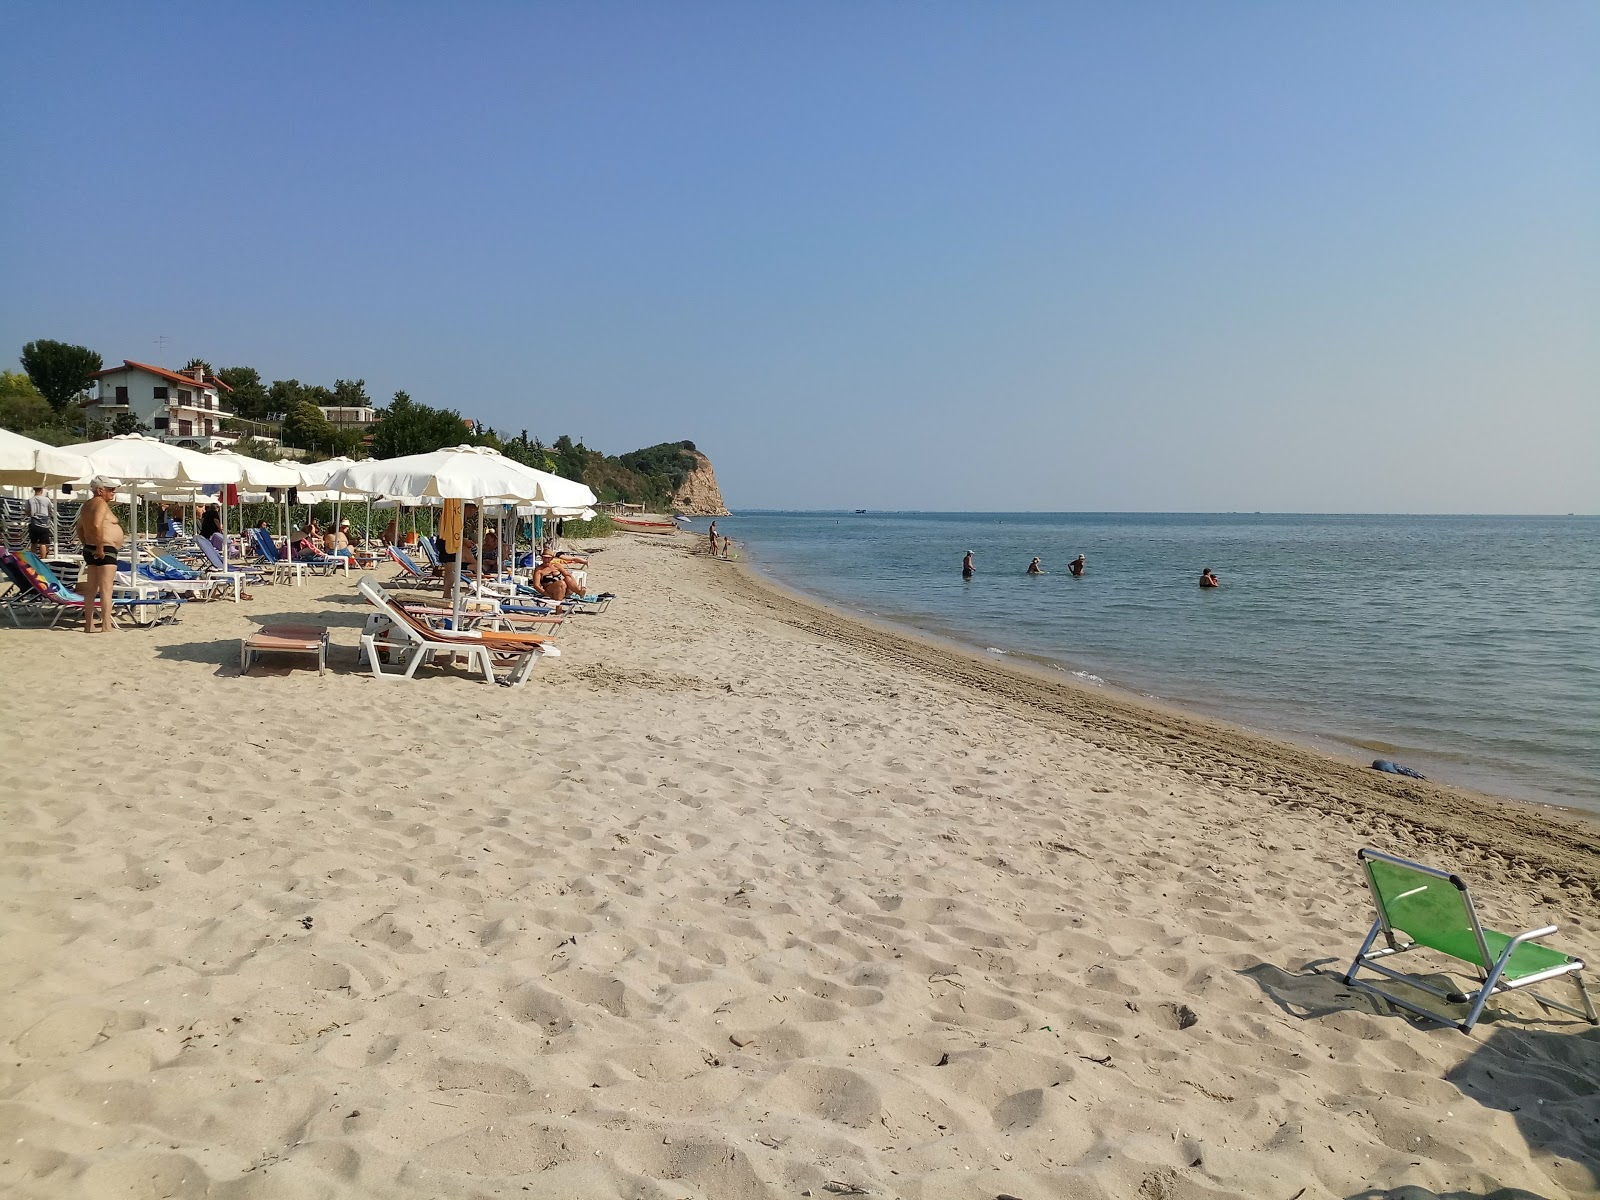 Fotografie cu Archea Pydna beach cu o suprafață de nisip strălucitor